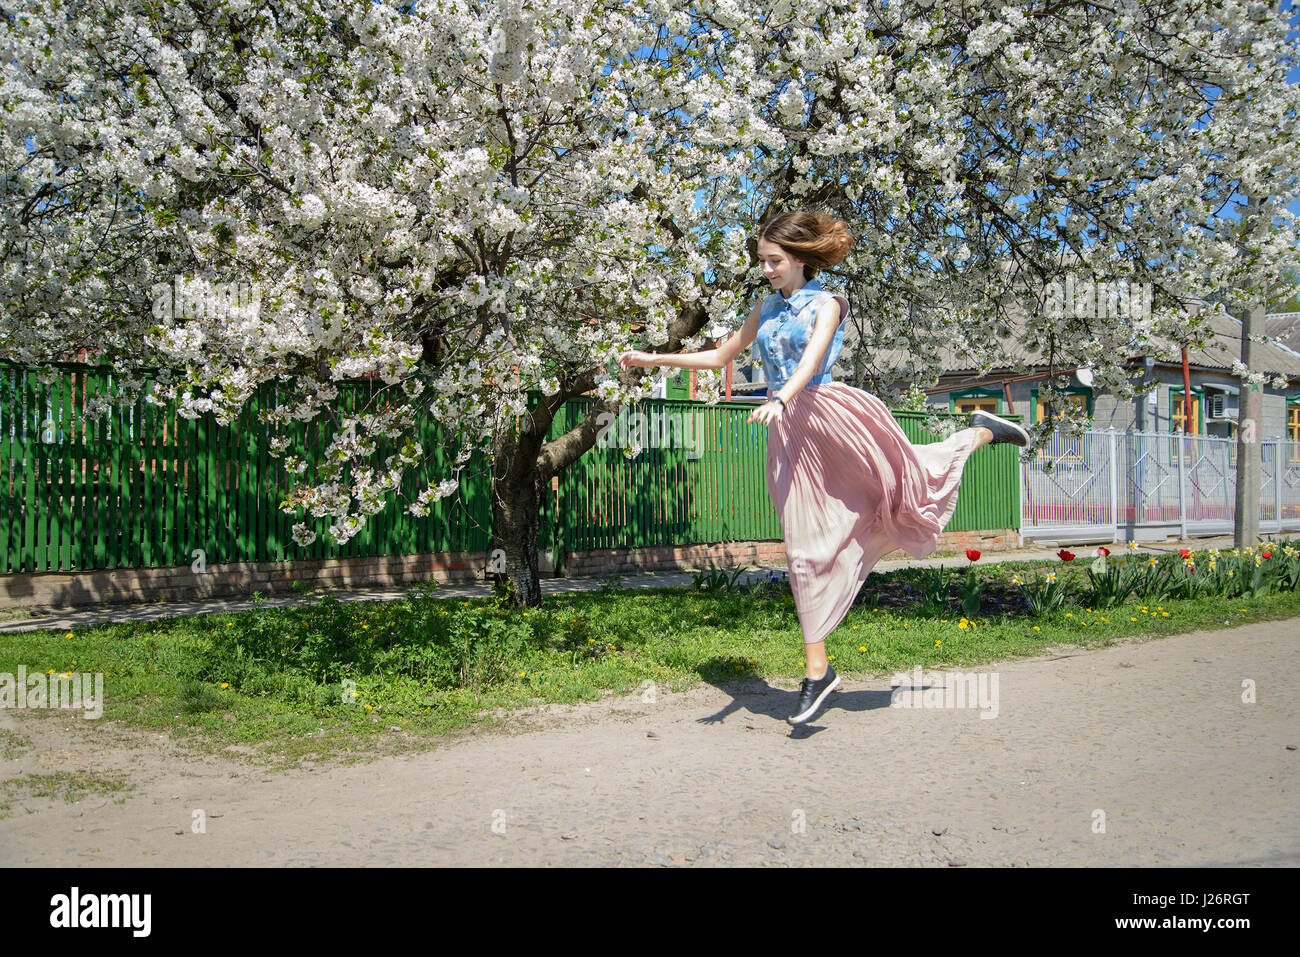 Ein junges Mädchen läuft, gegen den Hintergrund von einem blühenden Kirschbaum Baum Prellen Stockfoto